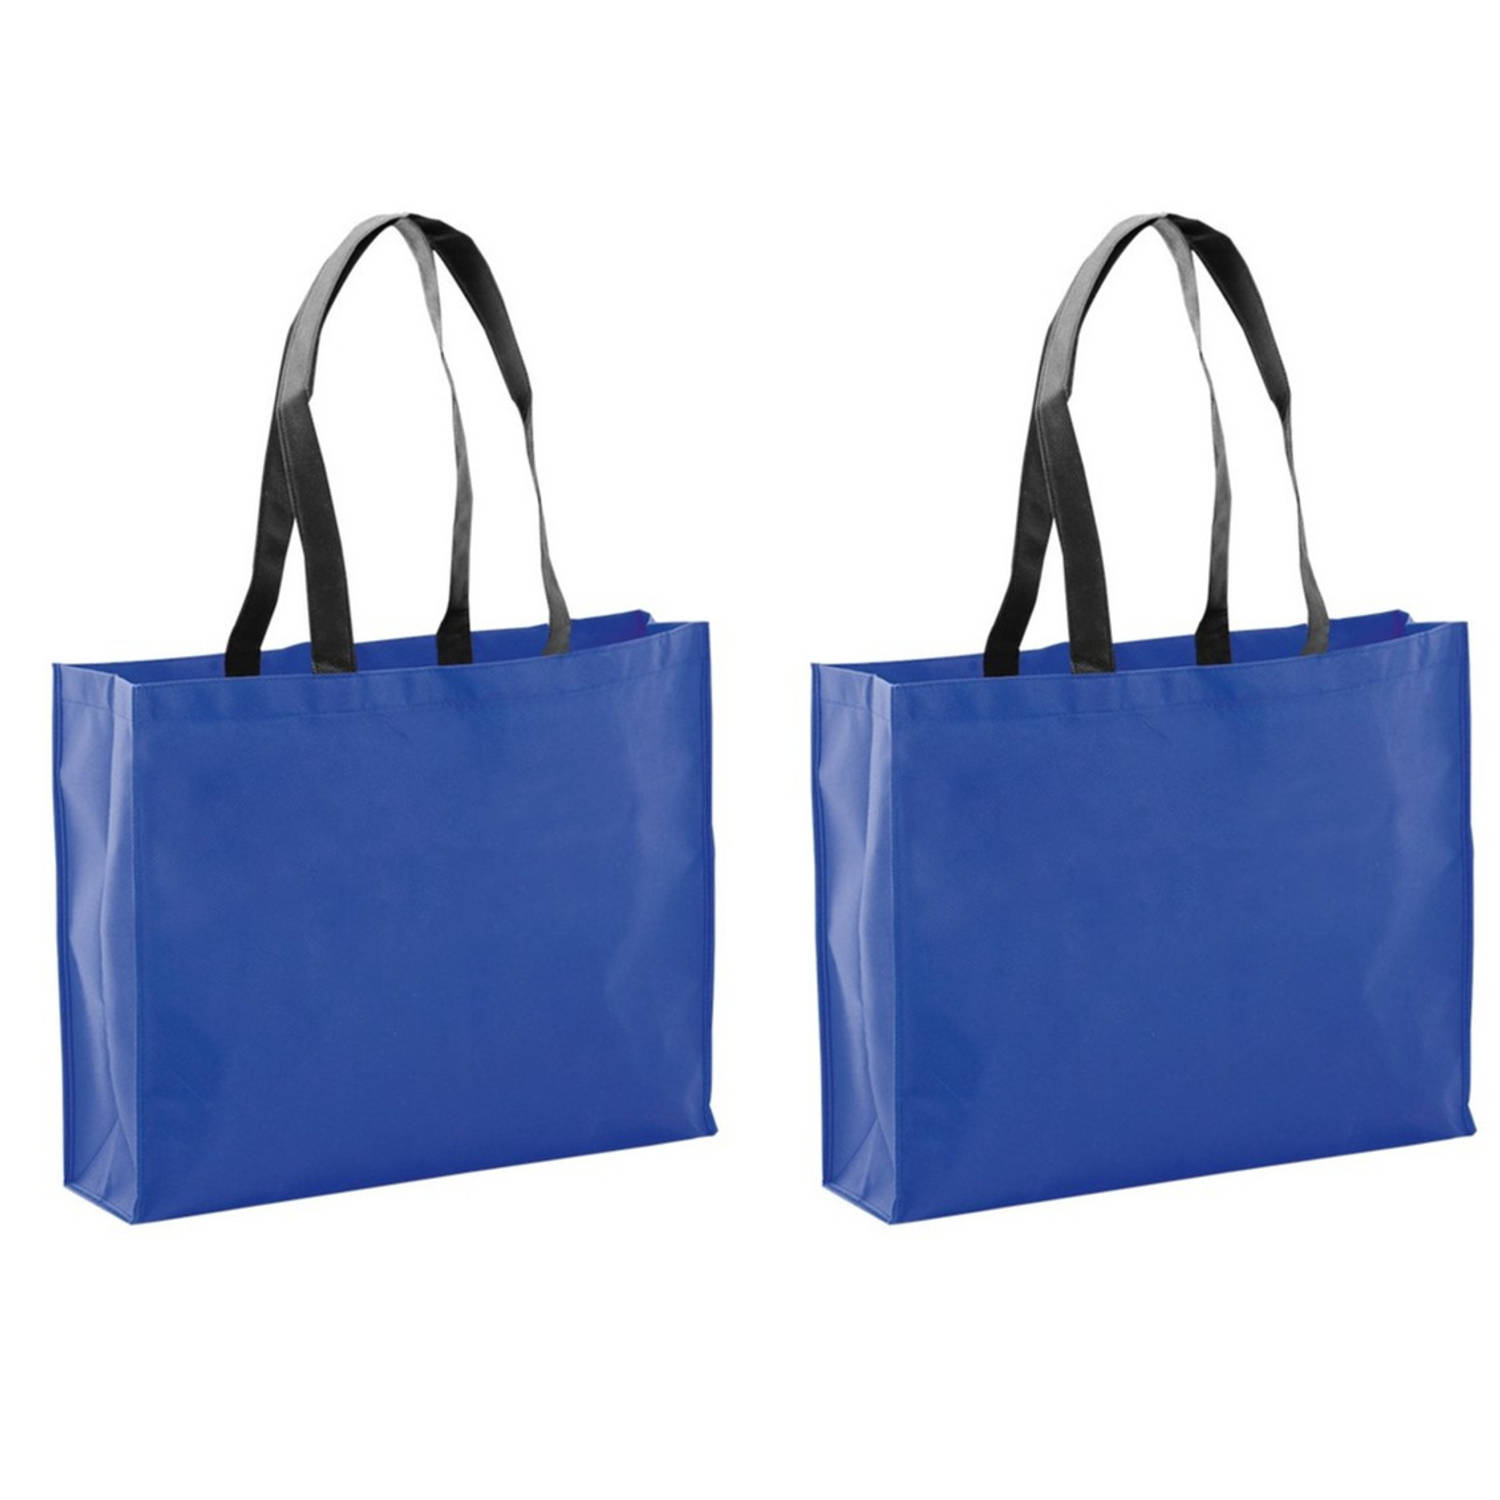 2x Stuks Draagtassen-schoudertassen-boodschappentassen In De Kleur Blauw 40 X 32 X 11 Cm Boodschappe